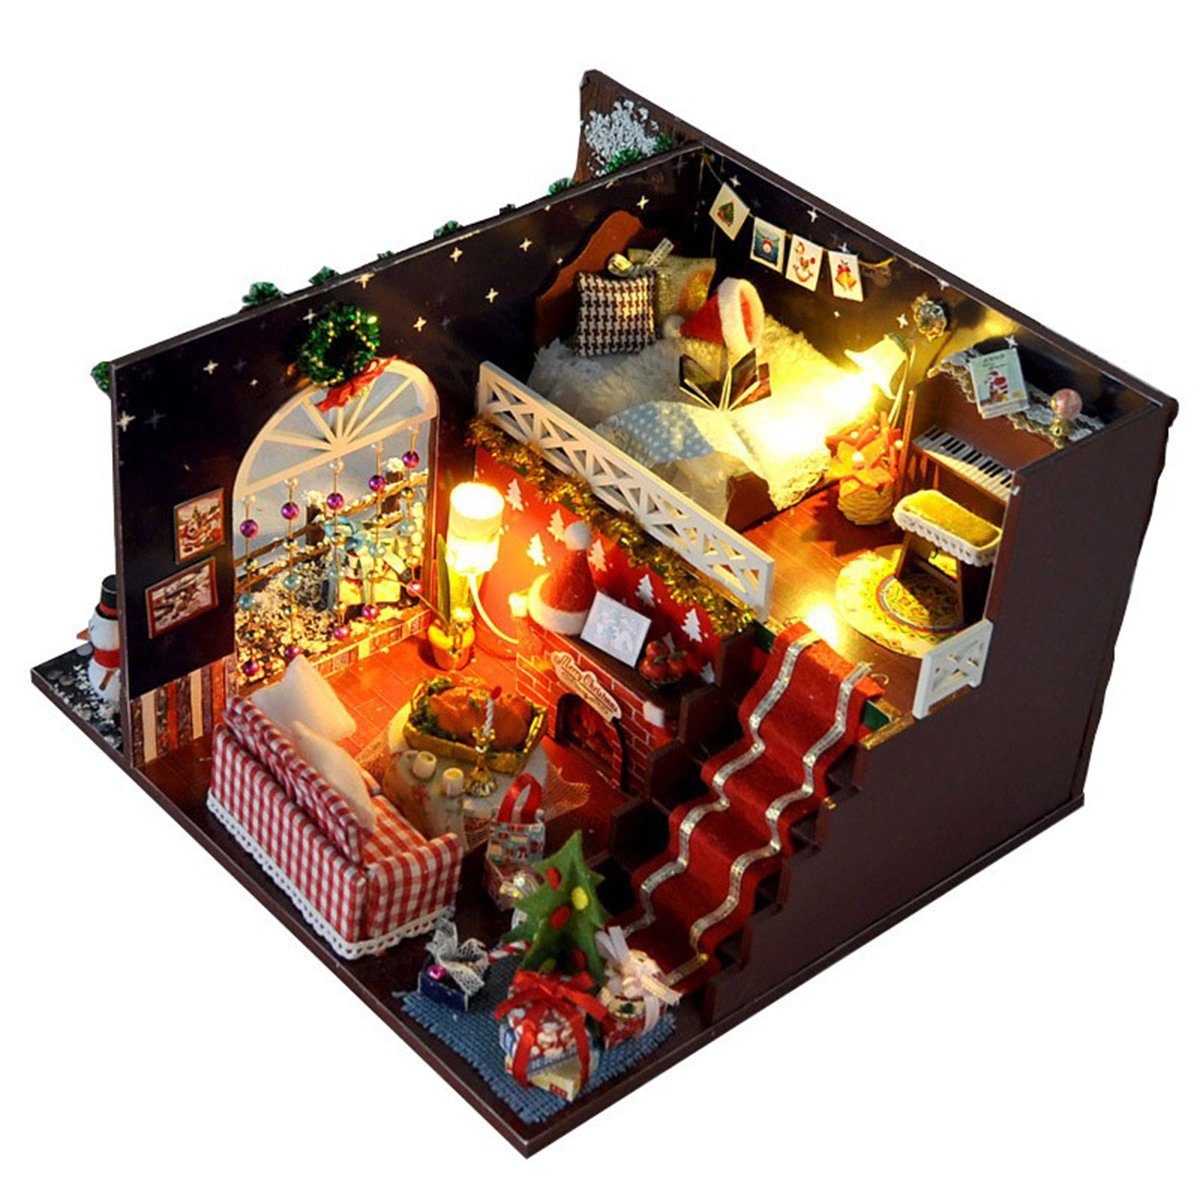 autolock Weihnachtshaus Miniatur Puppenhaus Weihnachtshaus DIY 3D Handwerk, Puppenhaus Kit Handmade Modell Weihnachtsgeschenke